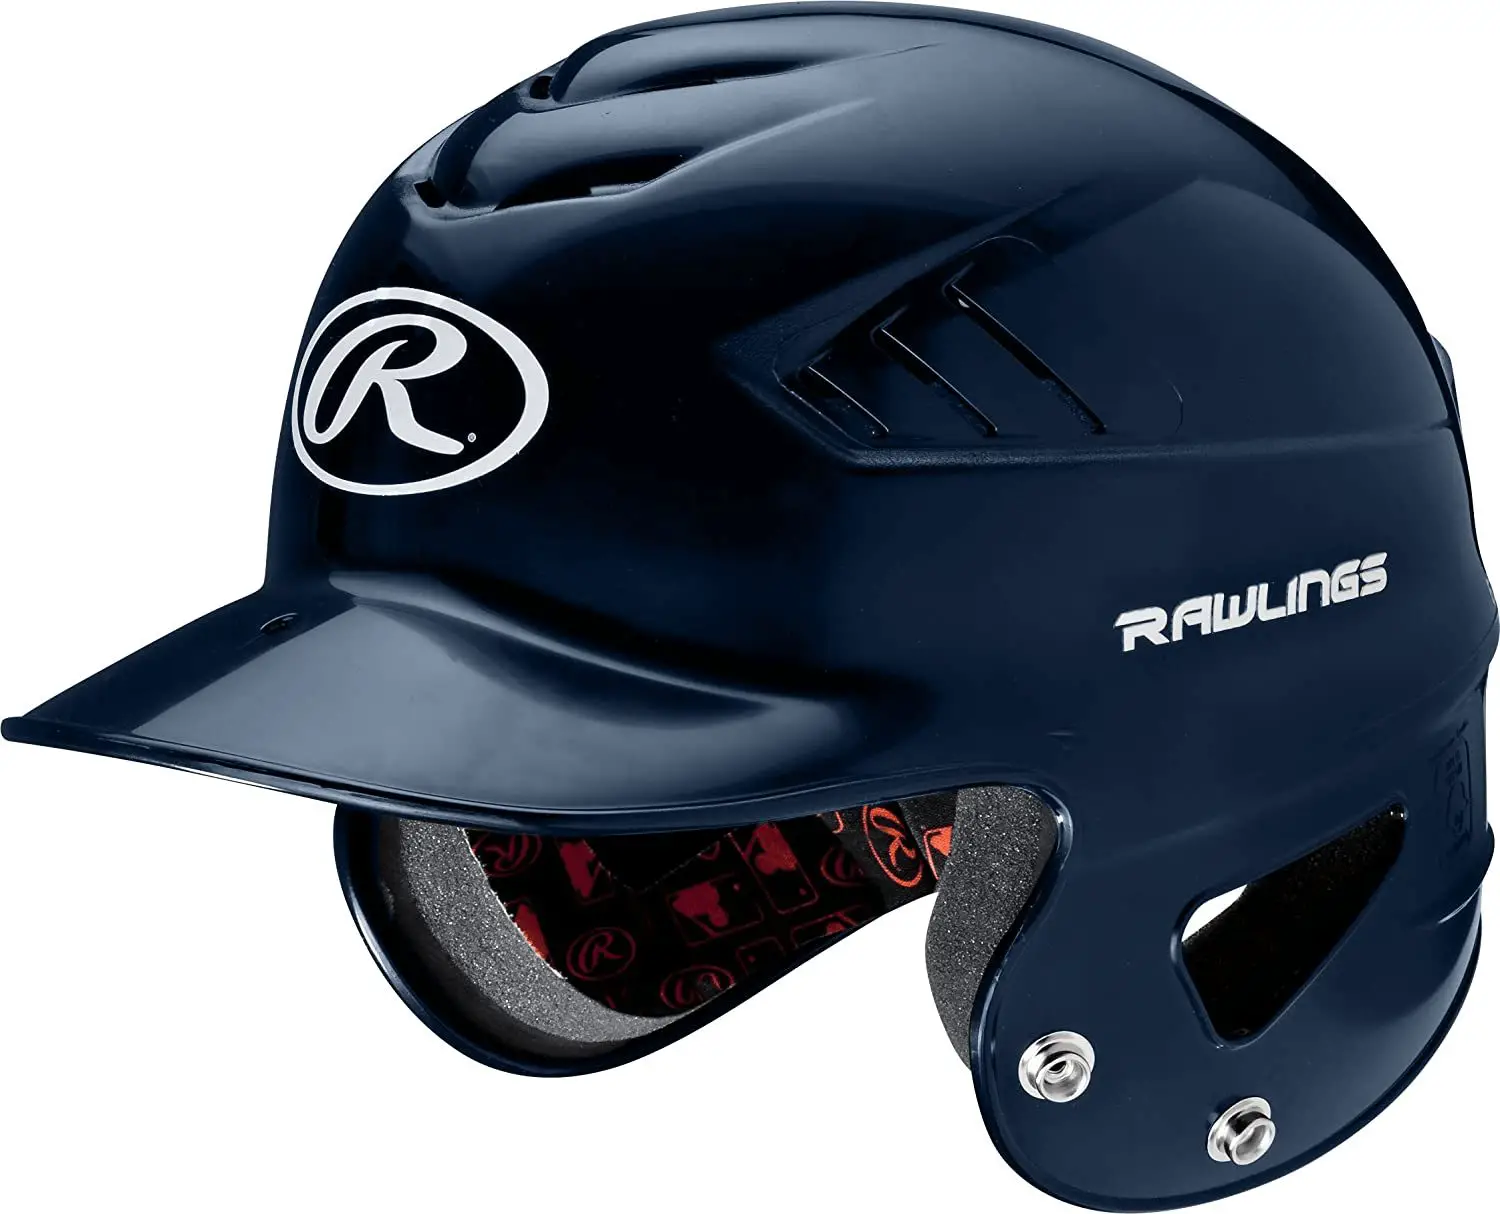 Rawlings-Coolflo-Youth-Batting-Helmet